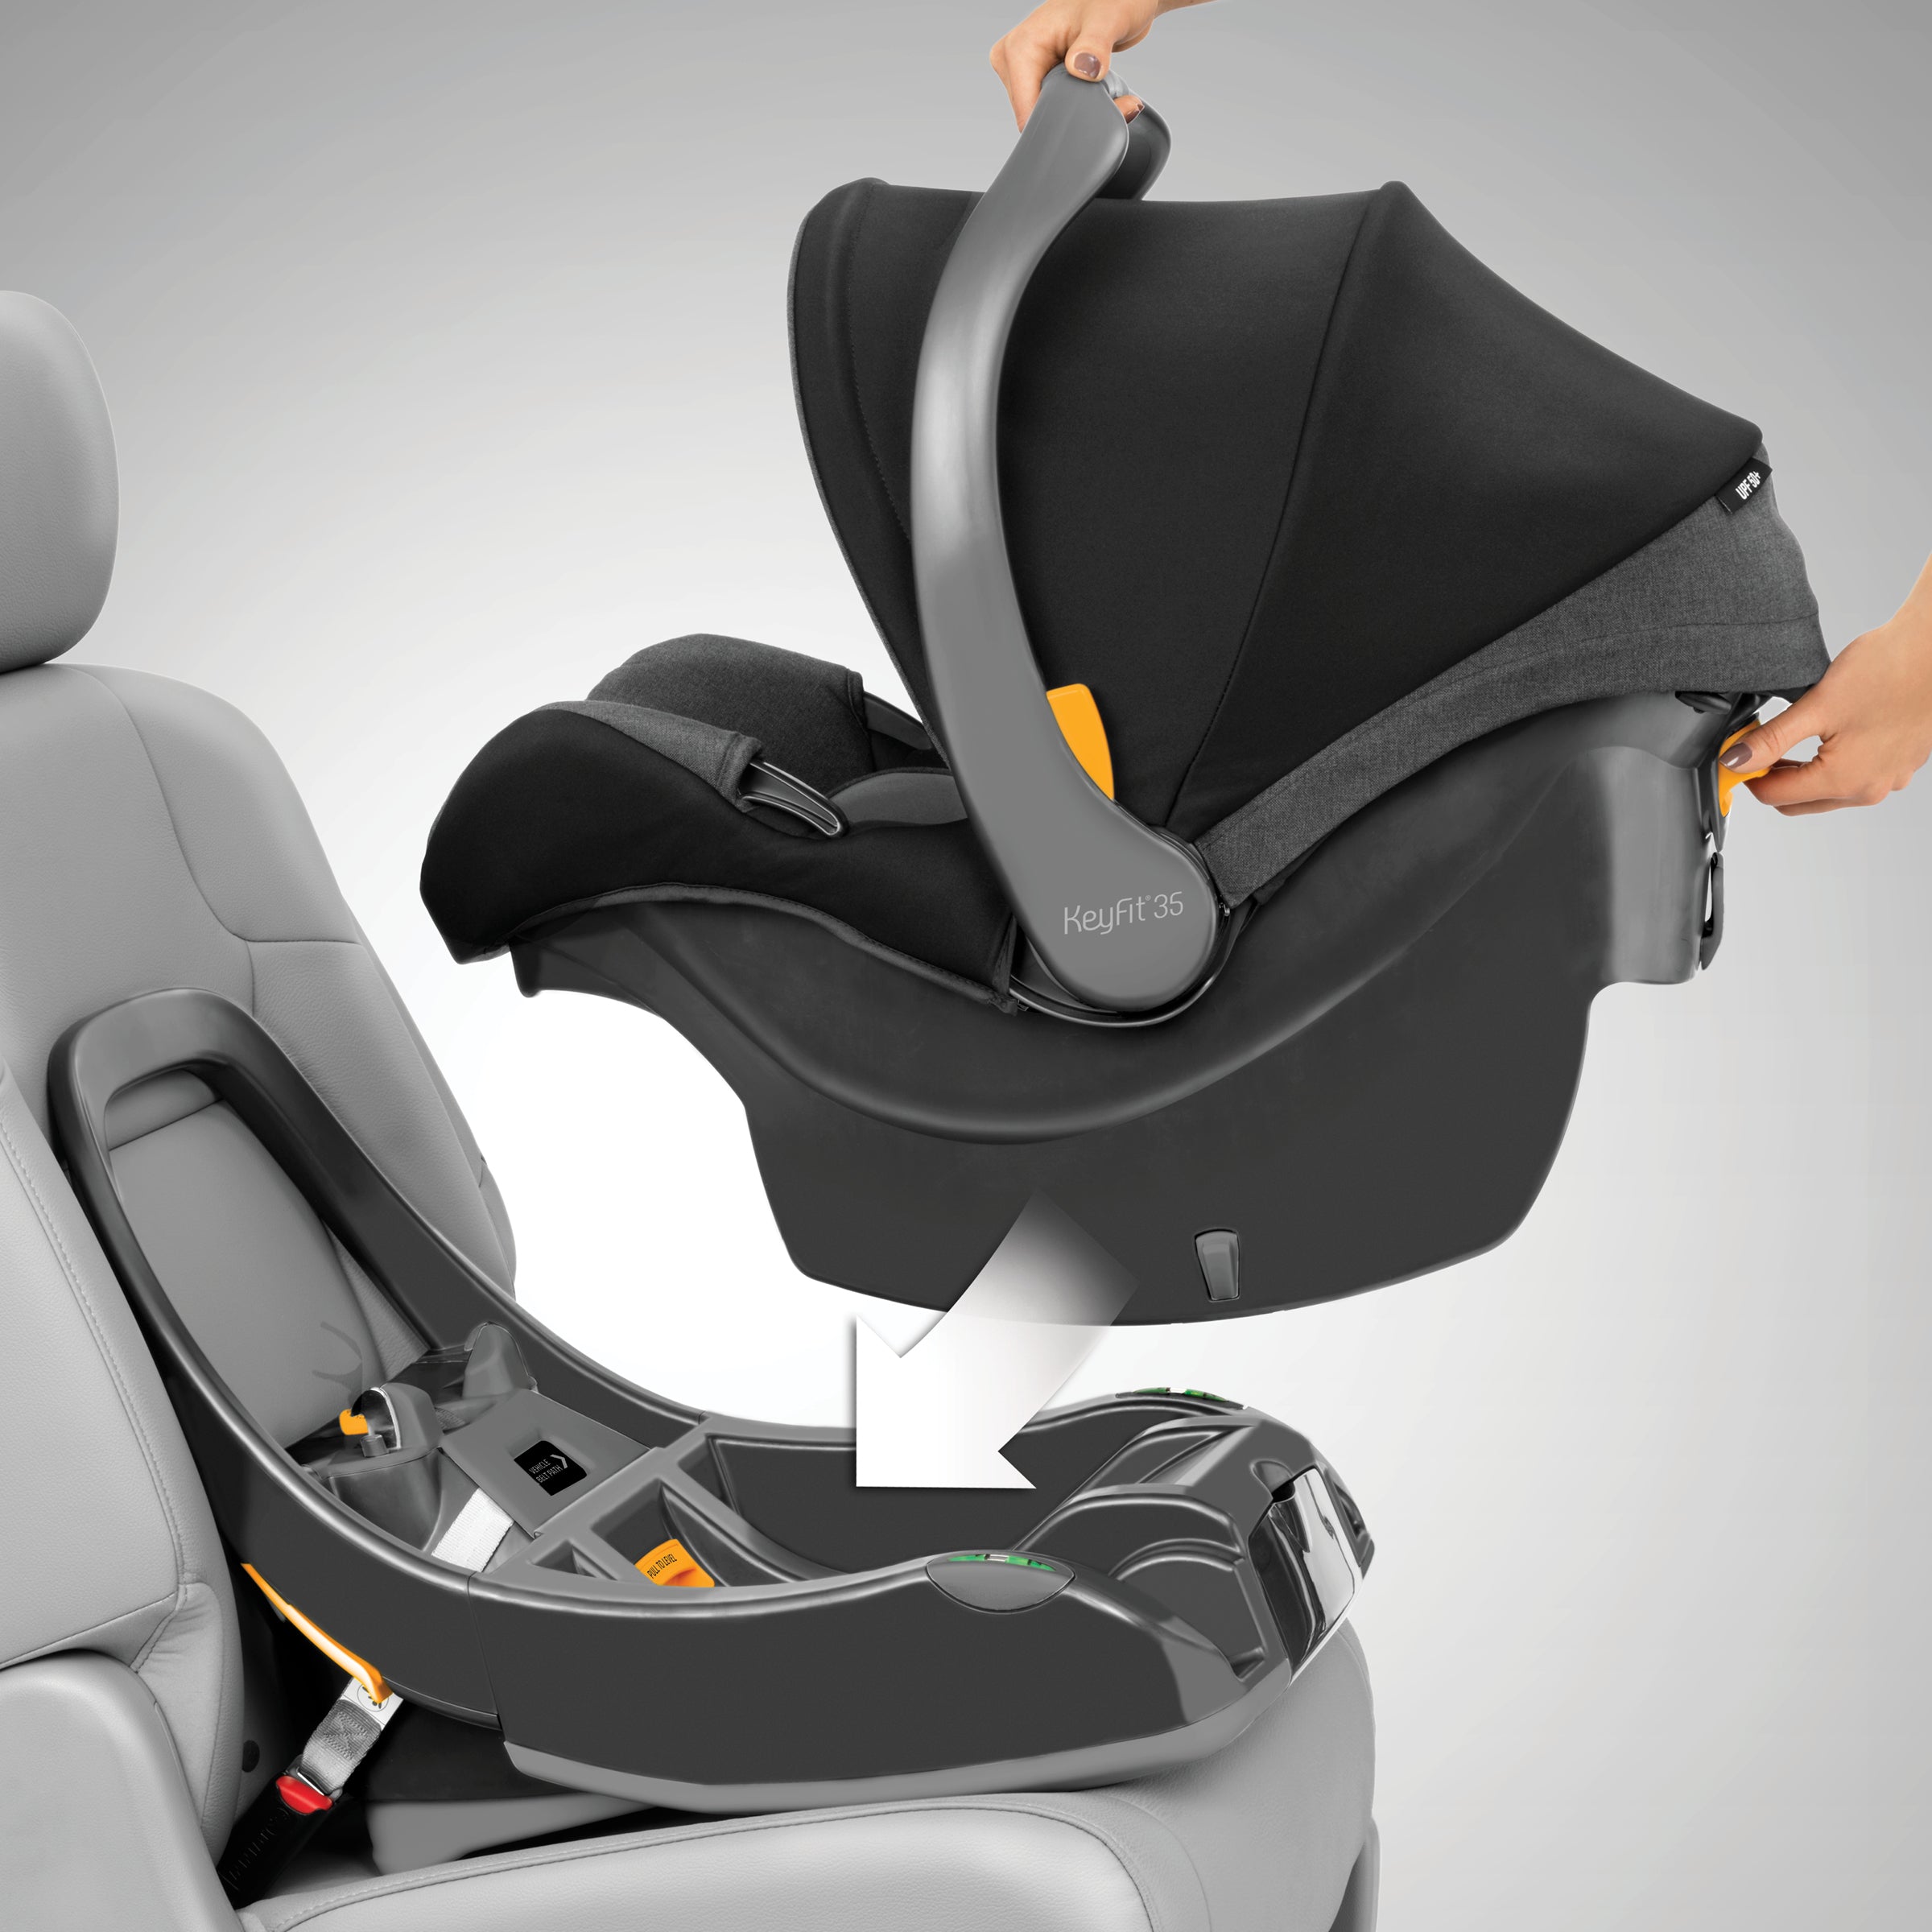 KeyFit 35 Infant Car Seat Base - Anthracite